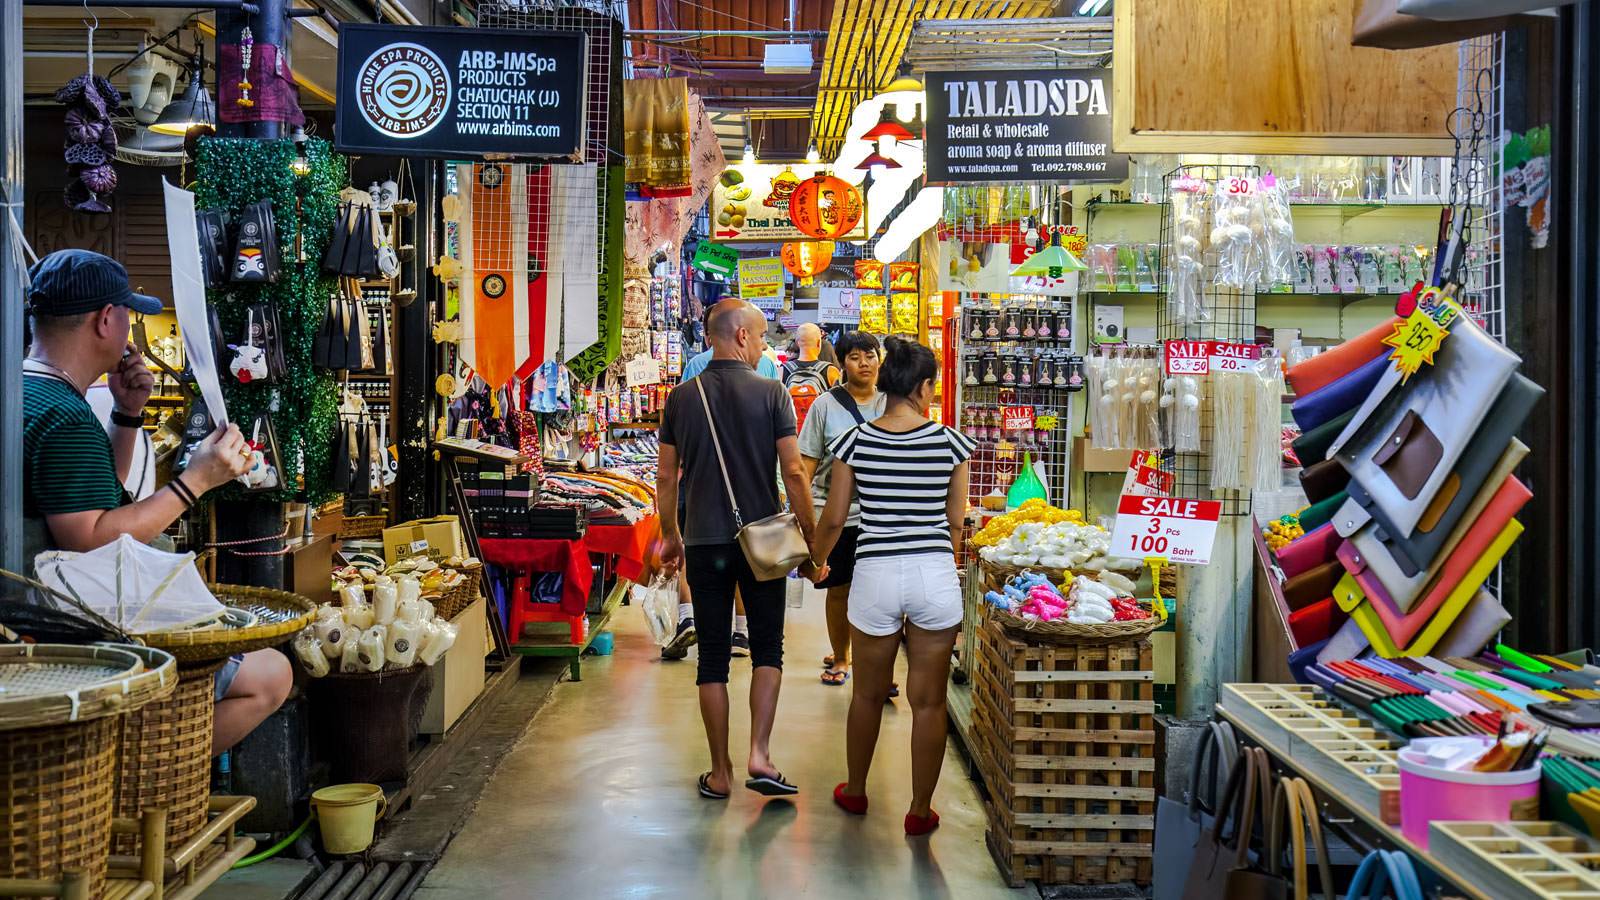 Отдых в бангкоке: все, что нужно знать туристу